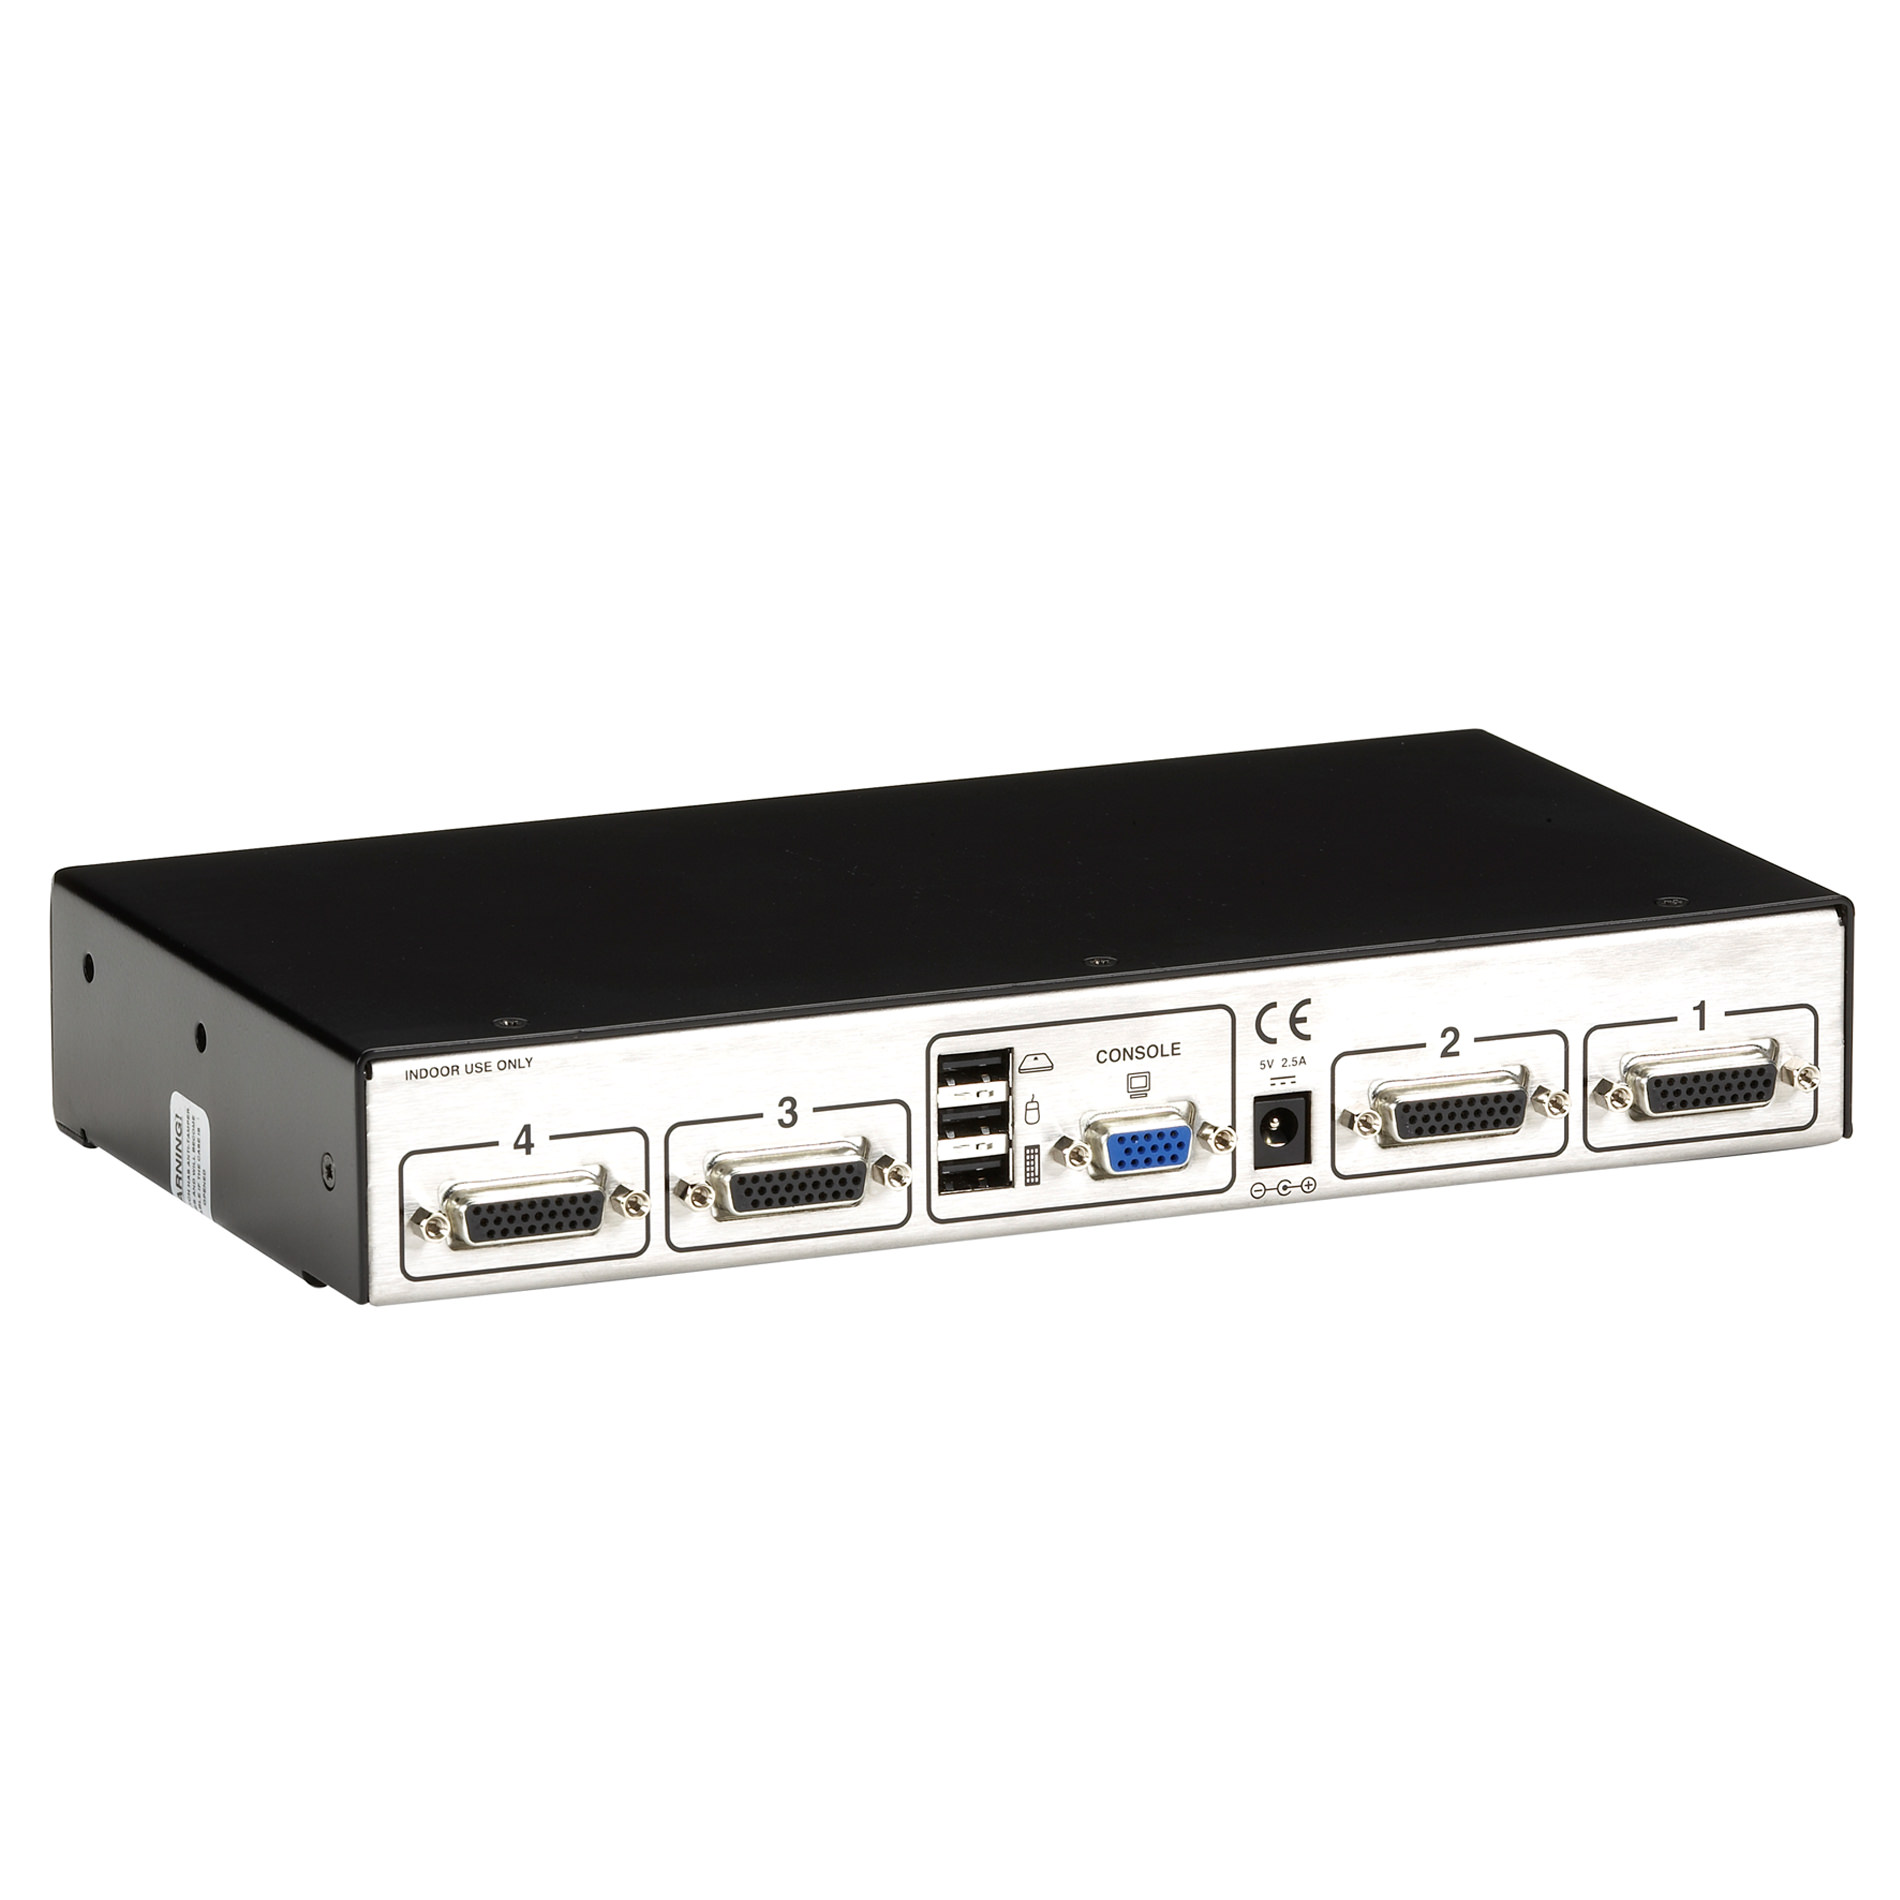 SW4009A-USB-EAL